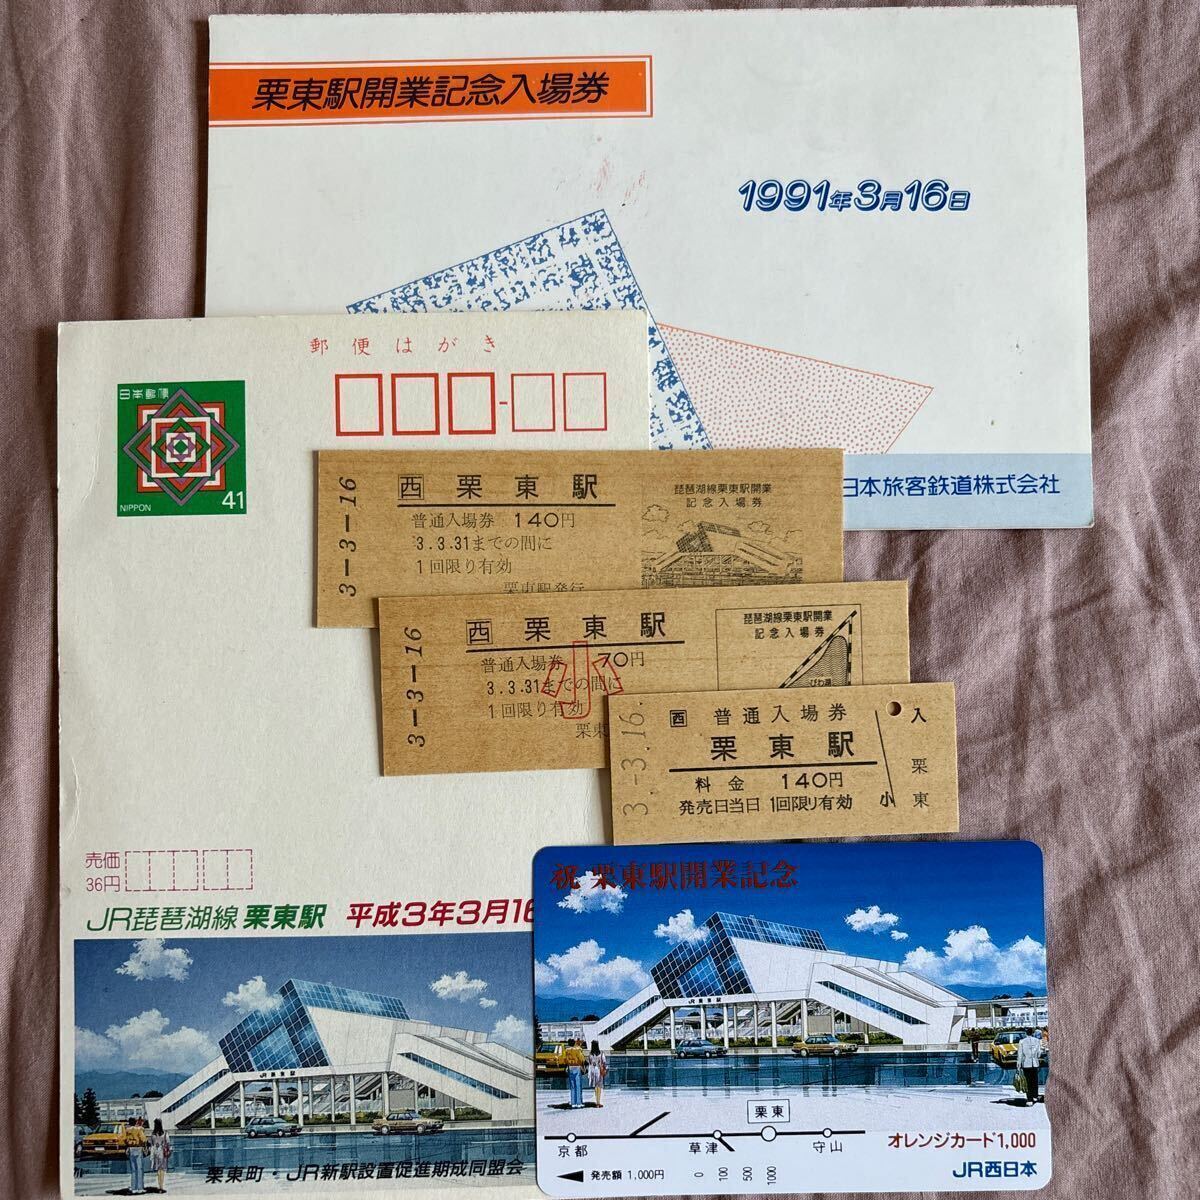 1991年【駅開業記念品】入場券,オレンジカード,ハガキ_画像1